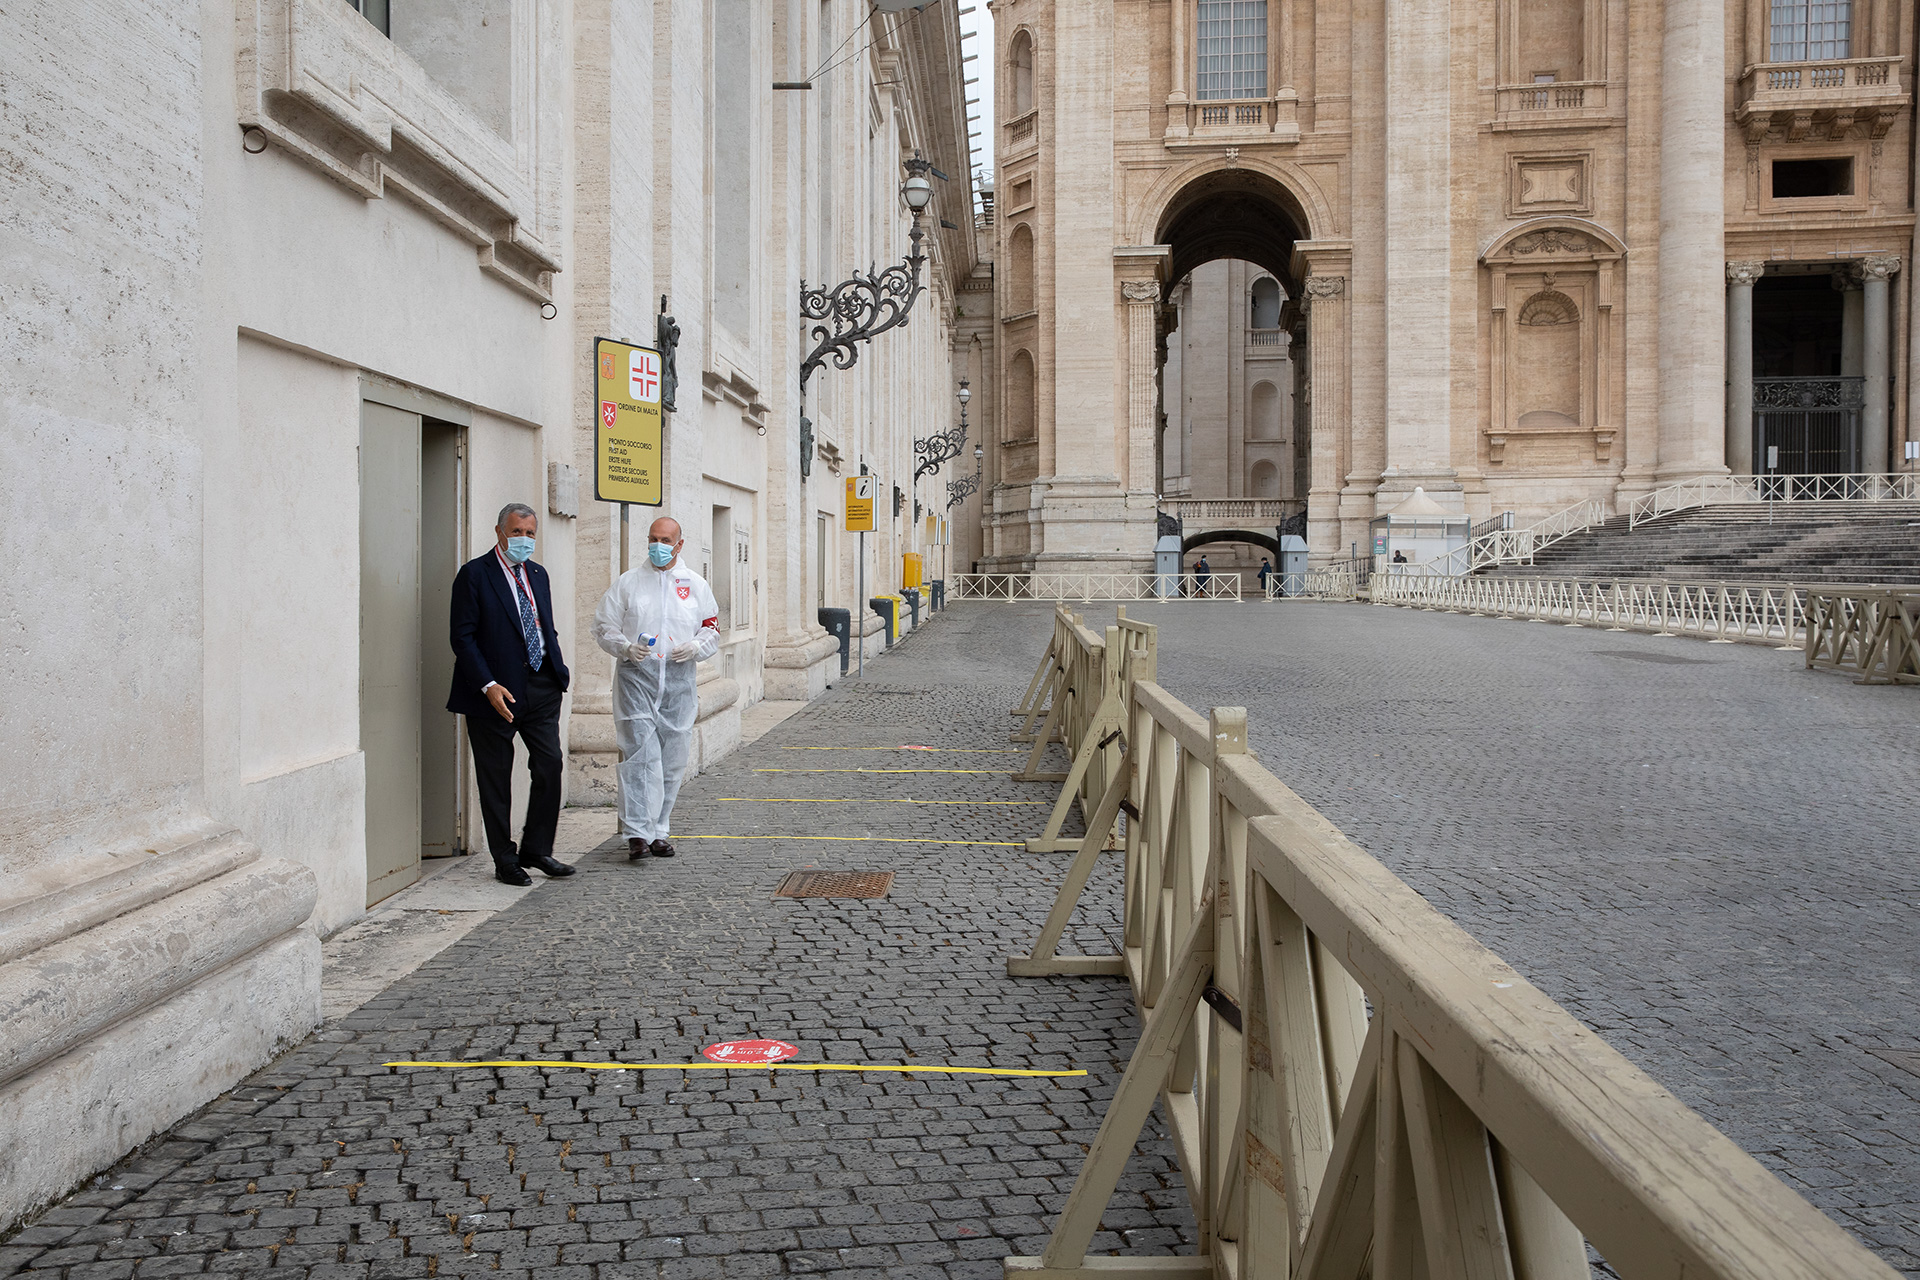 Vuelve a abrir sus puertas la Basílica de San Pedro: los voluntarios de la Orden de Malta colaboran con los controles sanitarios